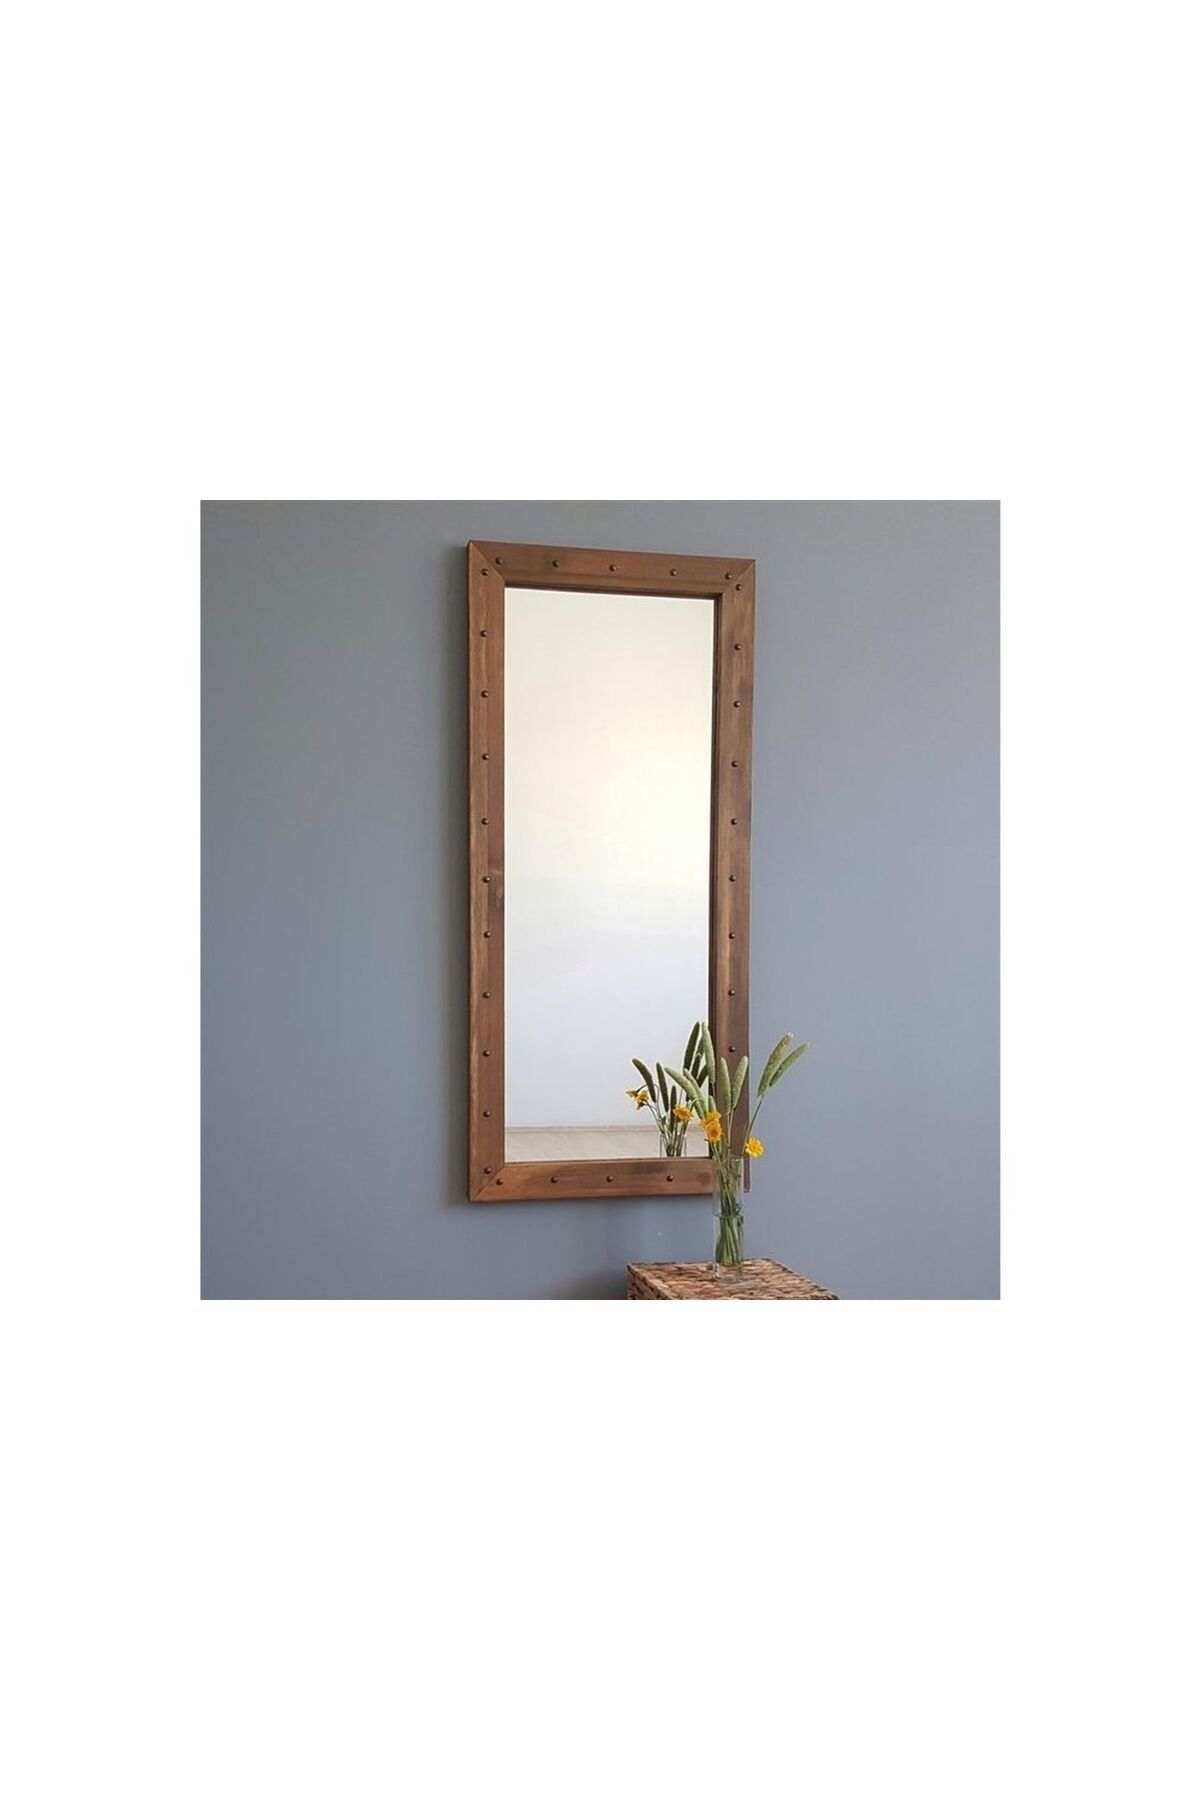 Vivense Neostill-doğal Ahşap Dekoratif Salon Ofis Boy Ayna 50x110 Cv